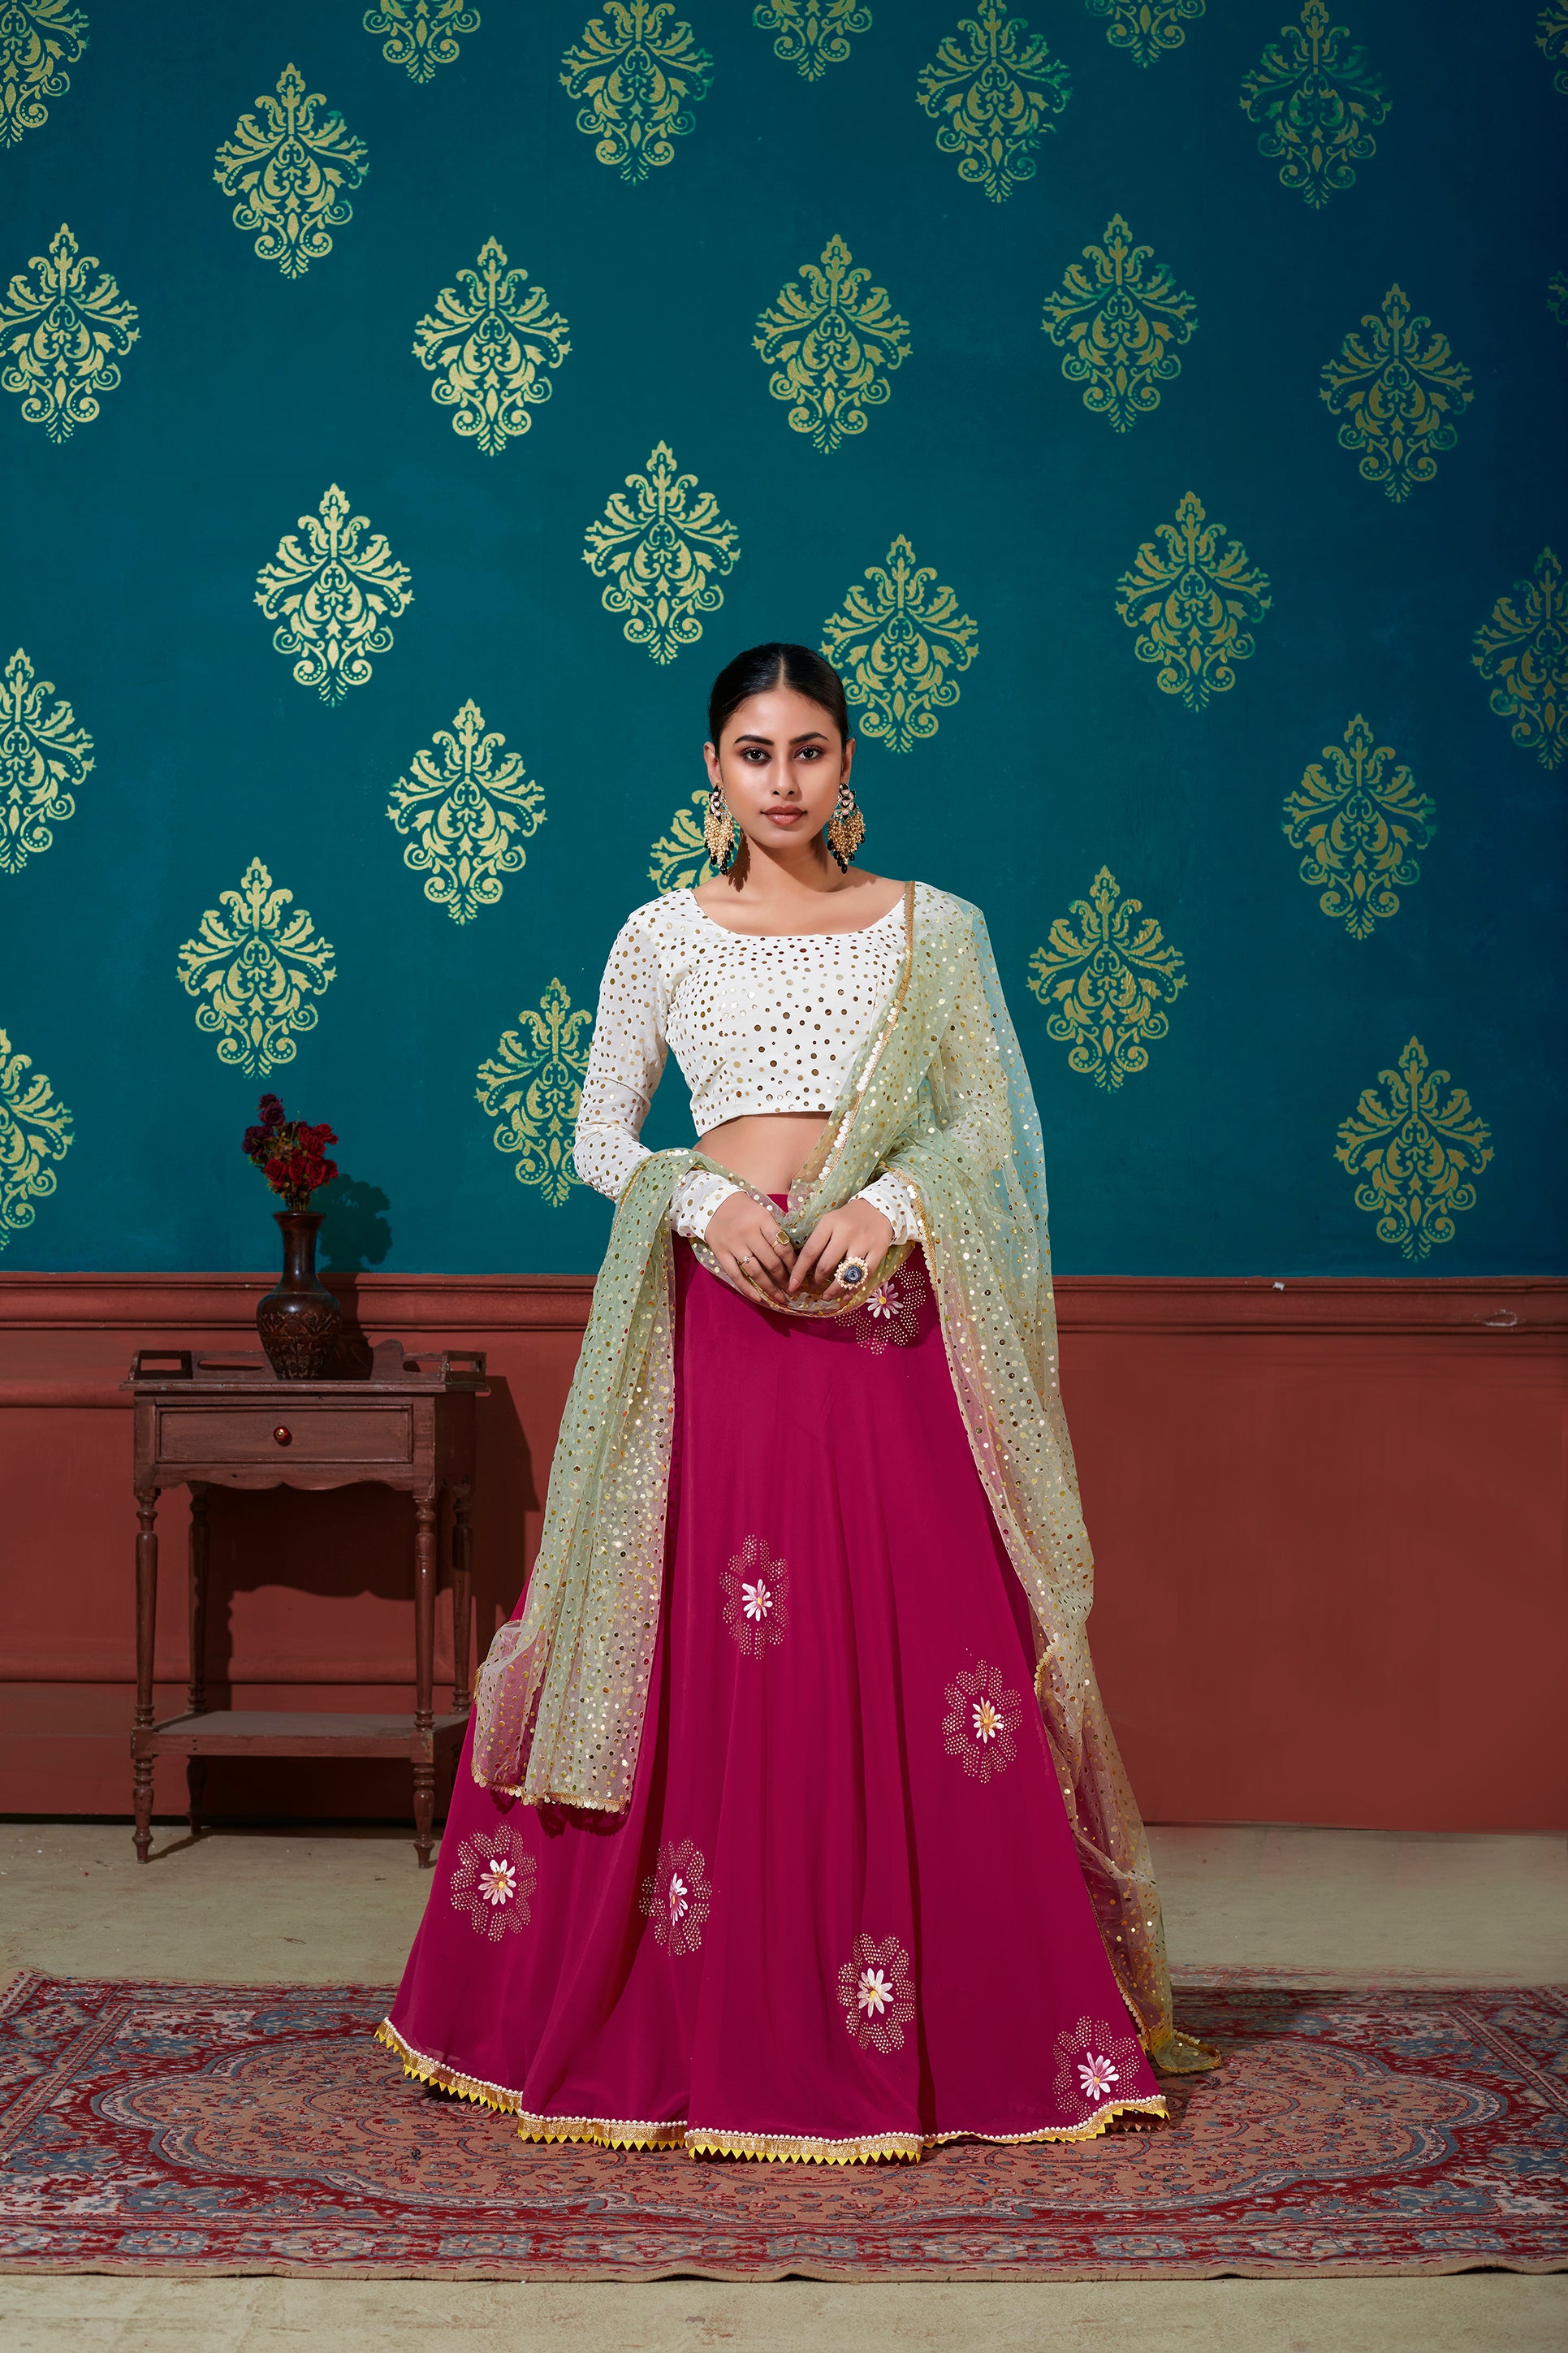 Buy Latest Paithani Lehenga Choli for Weddings Online in India - Etsy